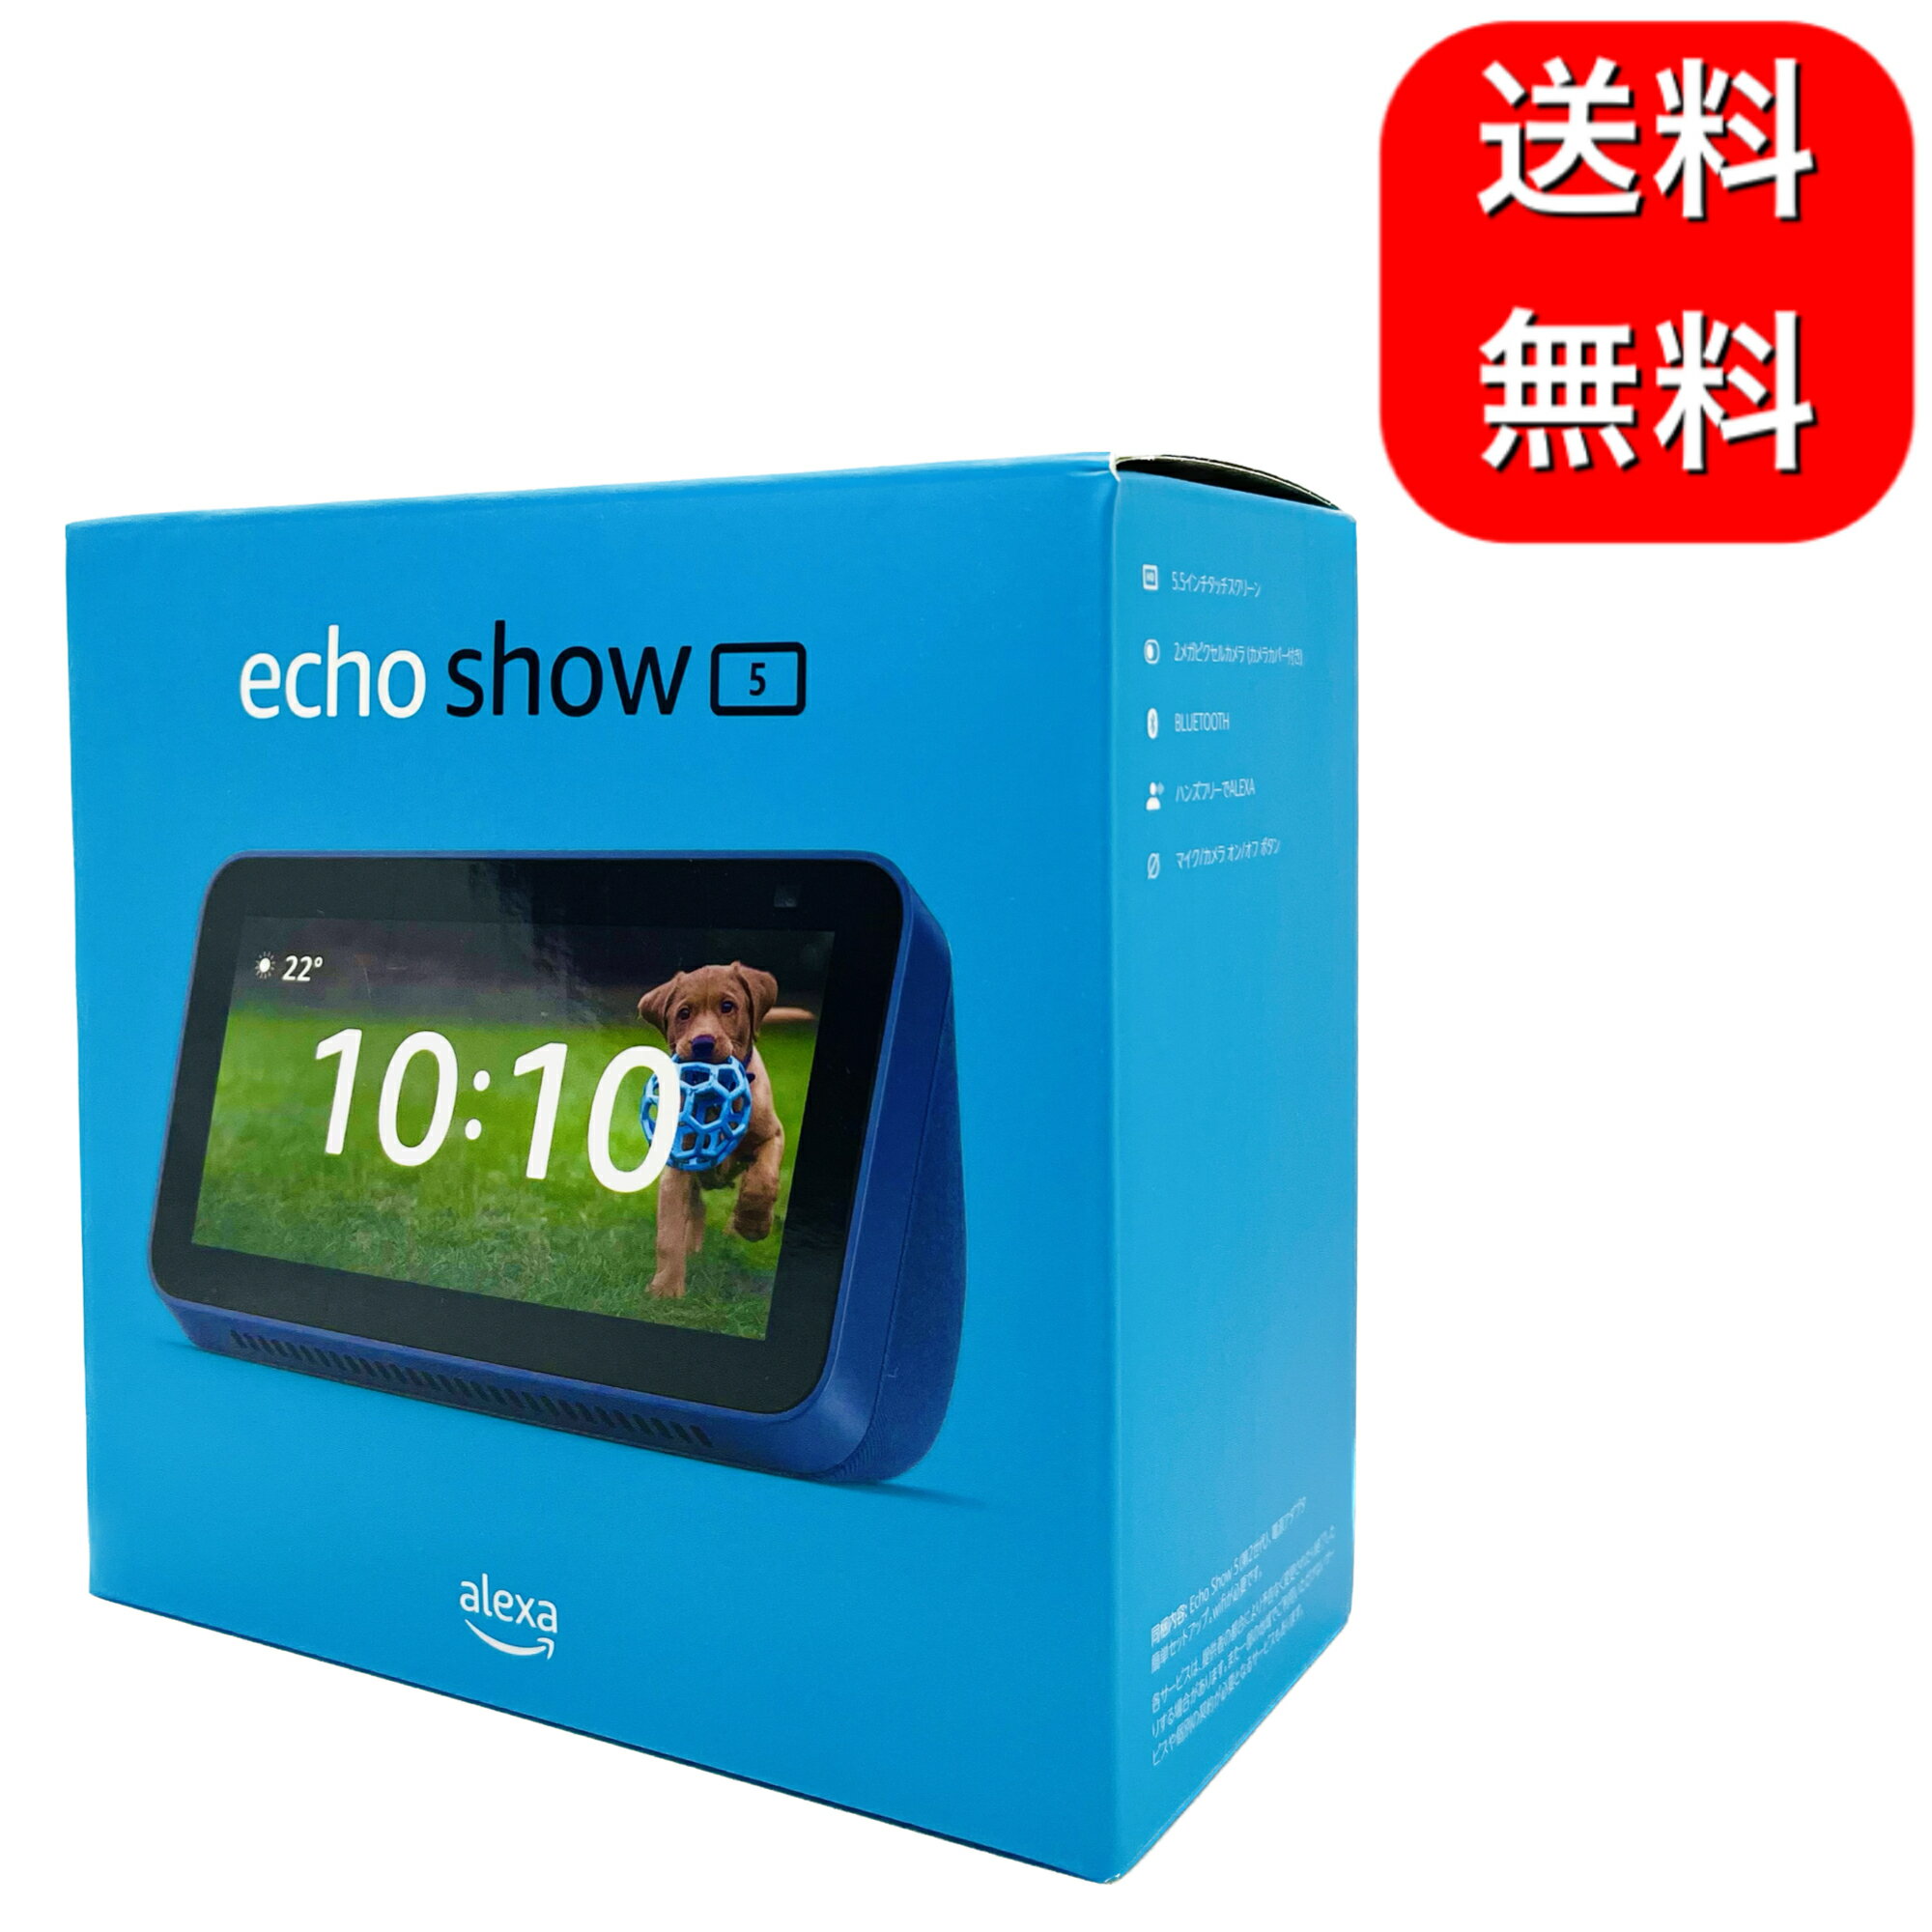 Echo Show 5 (エコーショー5) 第2世代 - スマートディスプレイ with Alexa 2メガピクセルカメラ付き ディープシーブルー